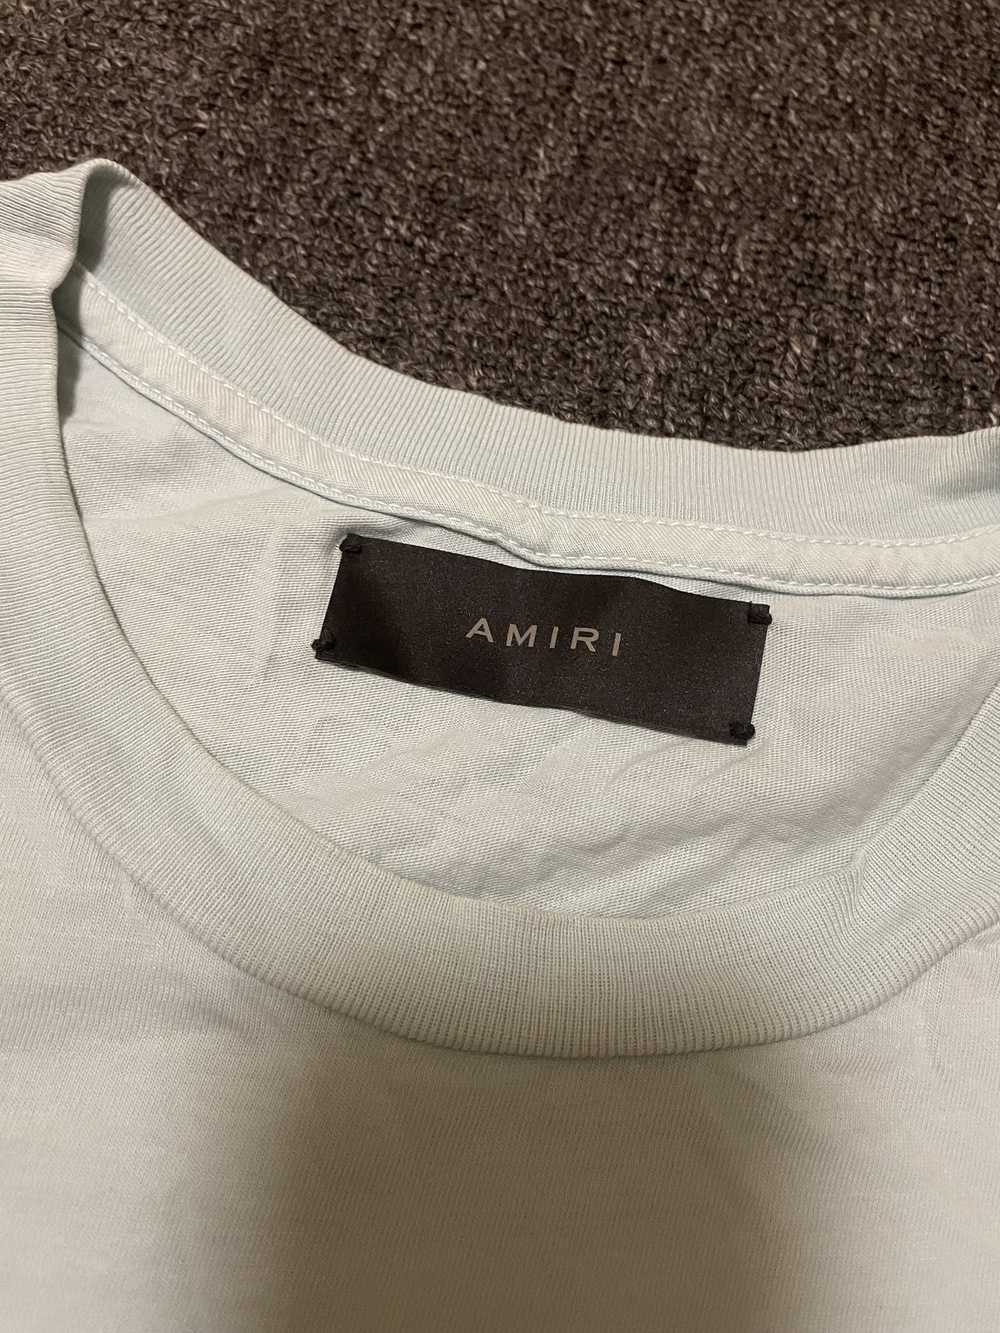 Amiri AMIRI light blue crane short sleeves, size … - image 3